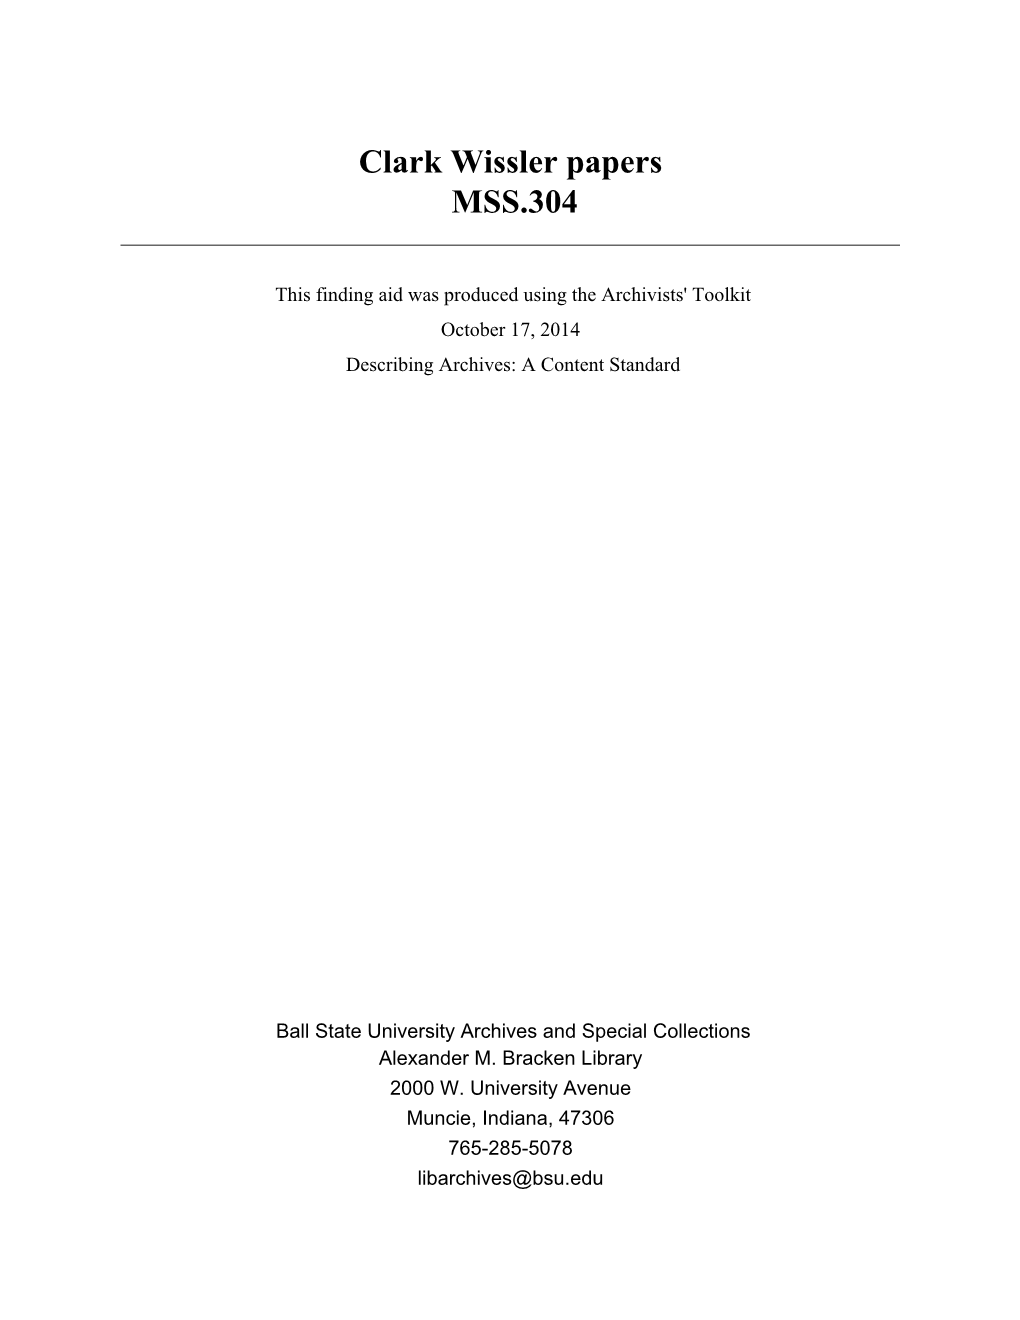 Clark Wissler Papers MSS.304